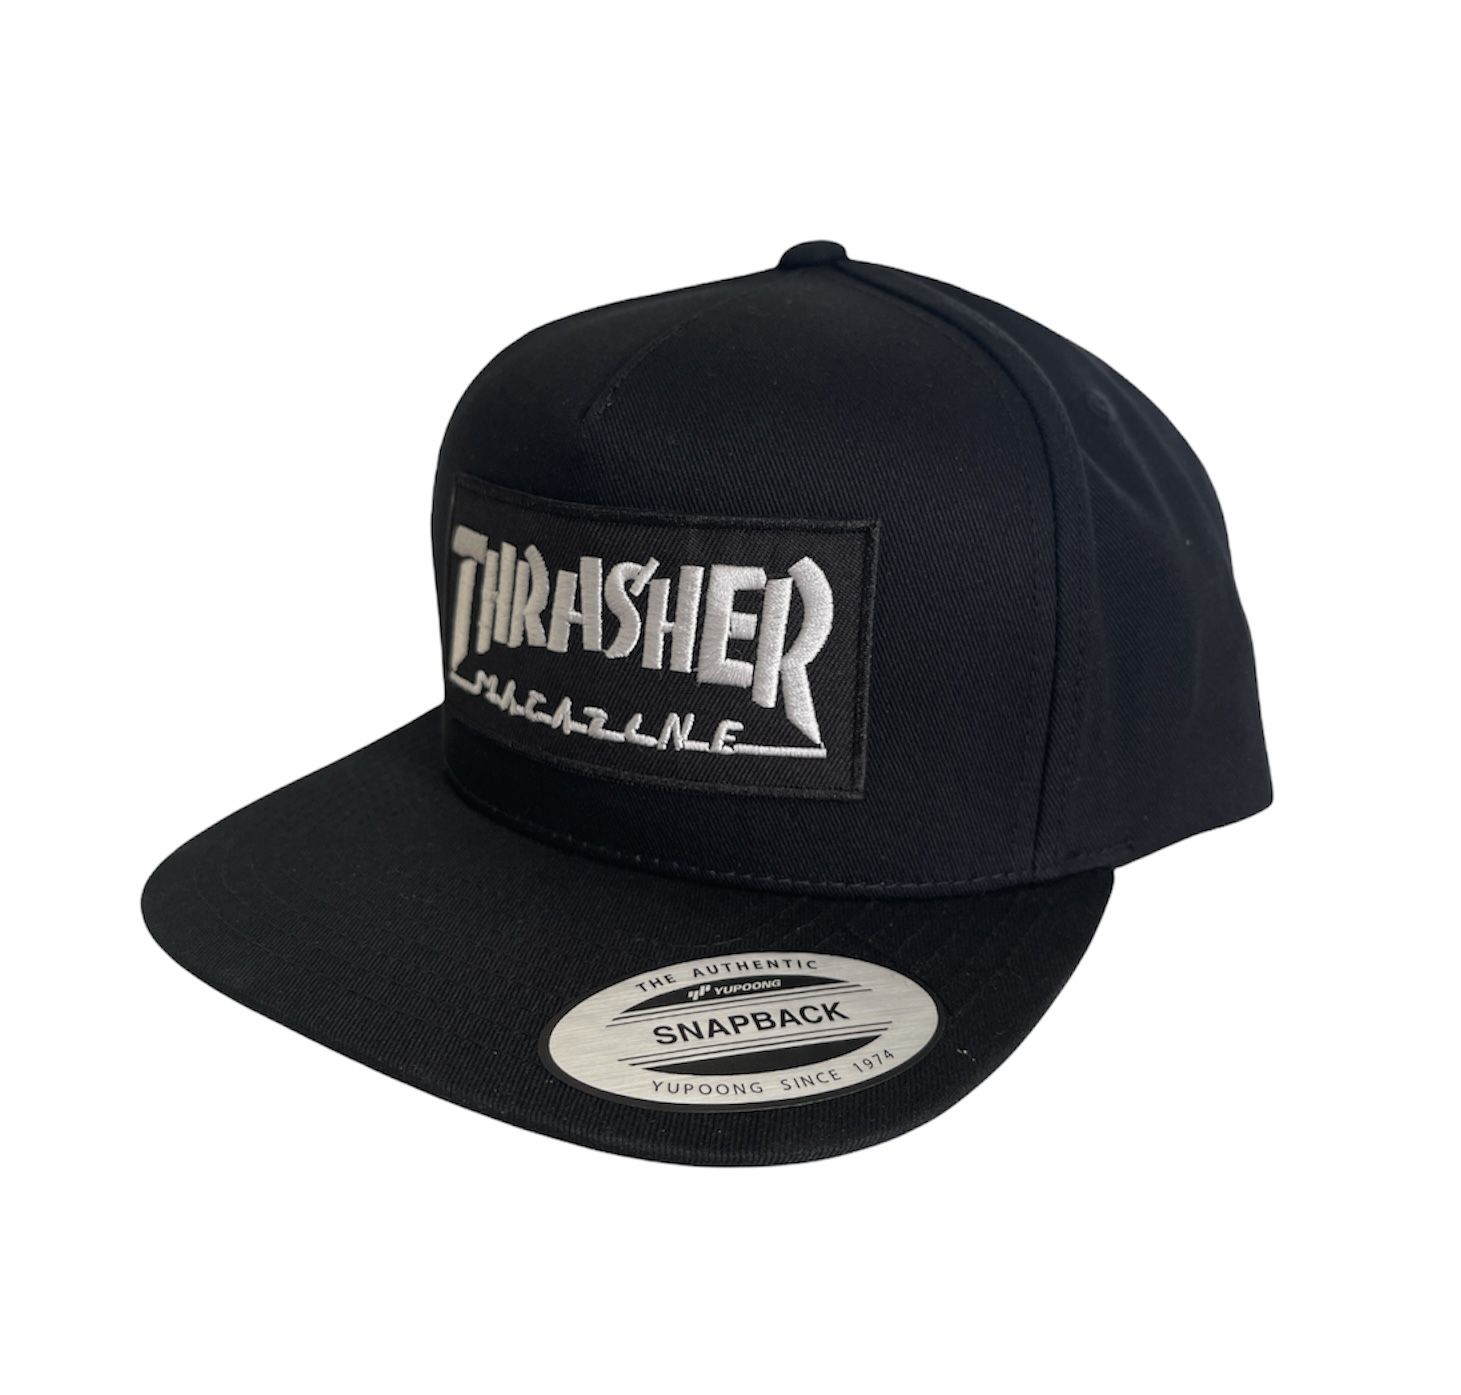 New Snapback Trasher Magazine Hat